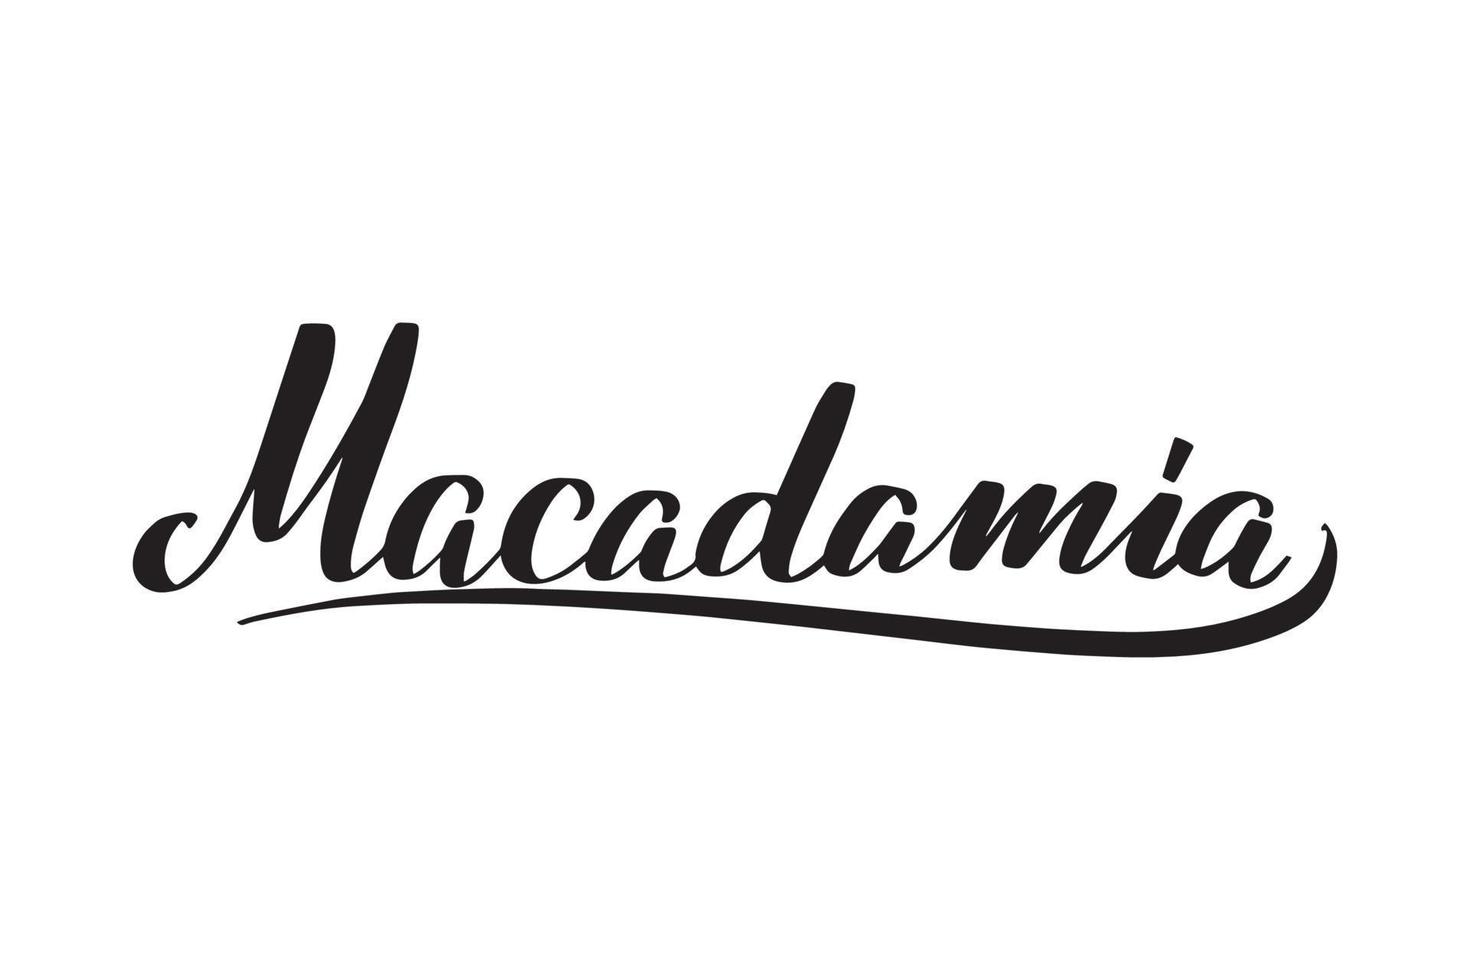 lettrage au pinceau manuscrit inspirant macadamia. illustration de calligraphie vectorielle isolée sur fond blanc. typographie pour bannières, badges, cartes postales, t-shirts, impressions, affiches. vecteur